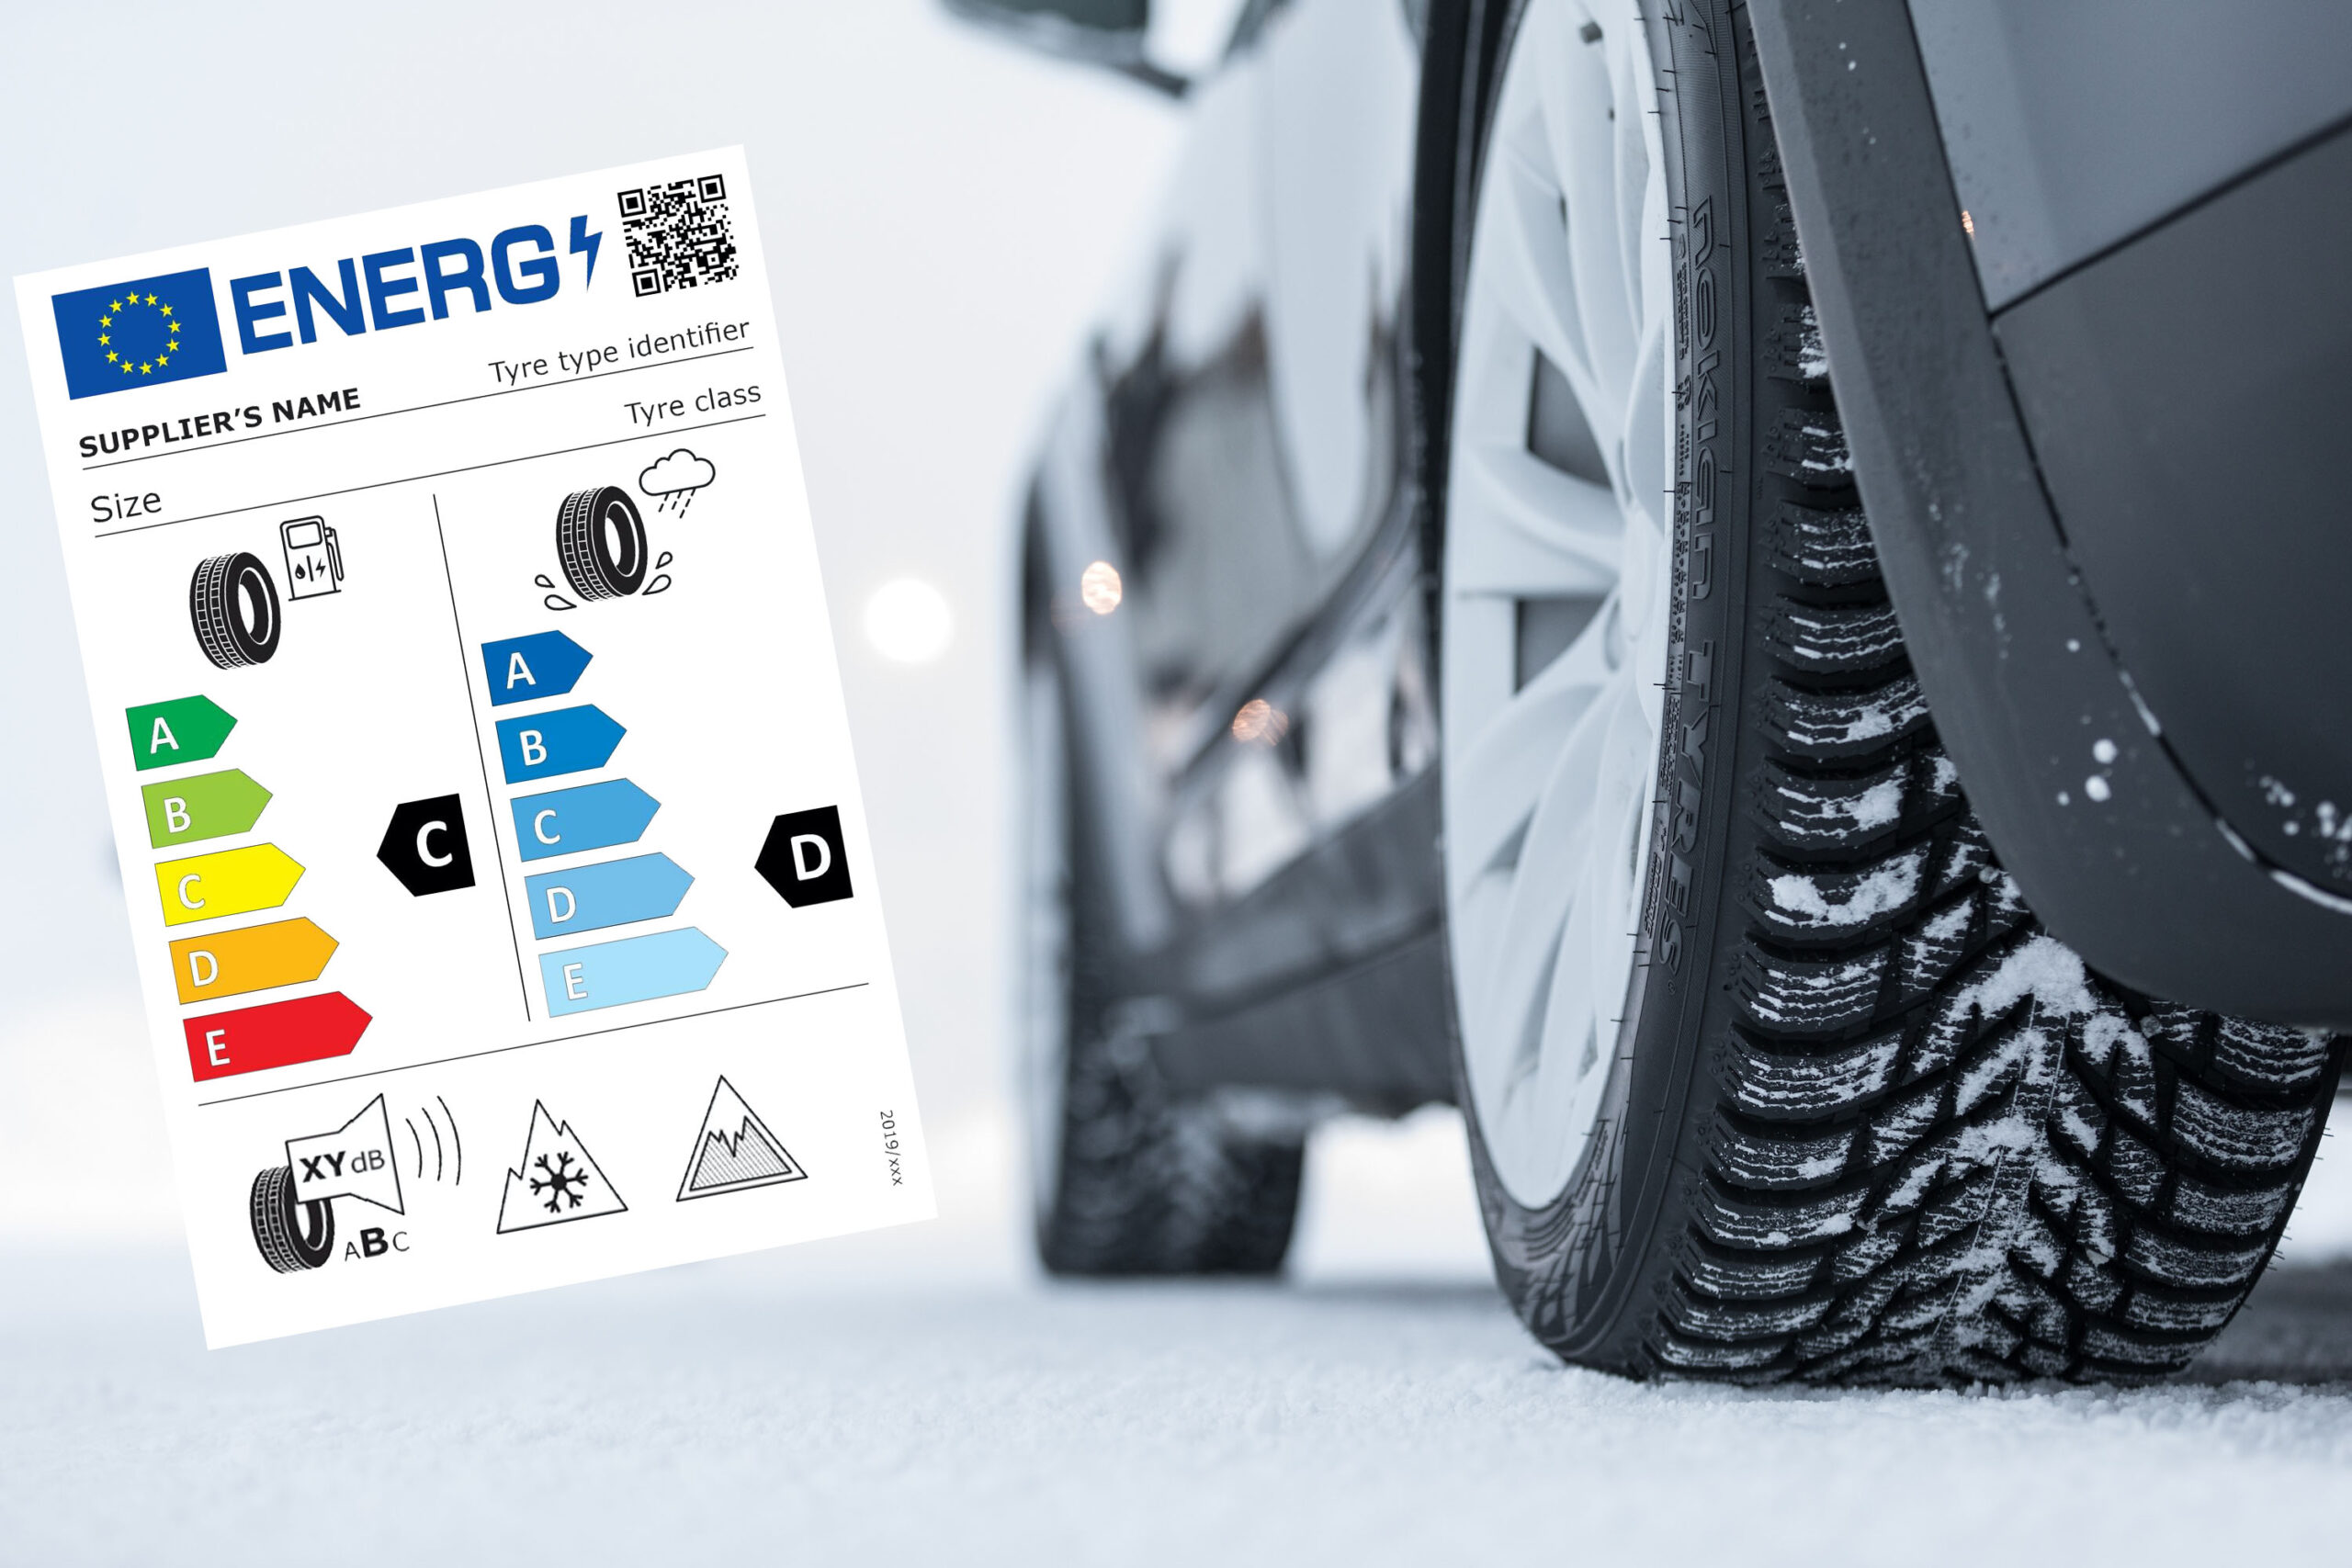 Nuova etichetta europea dei pneumatici dal 2021. Nokian Tyres: “Utile soprattutto per le invernali”